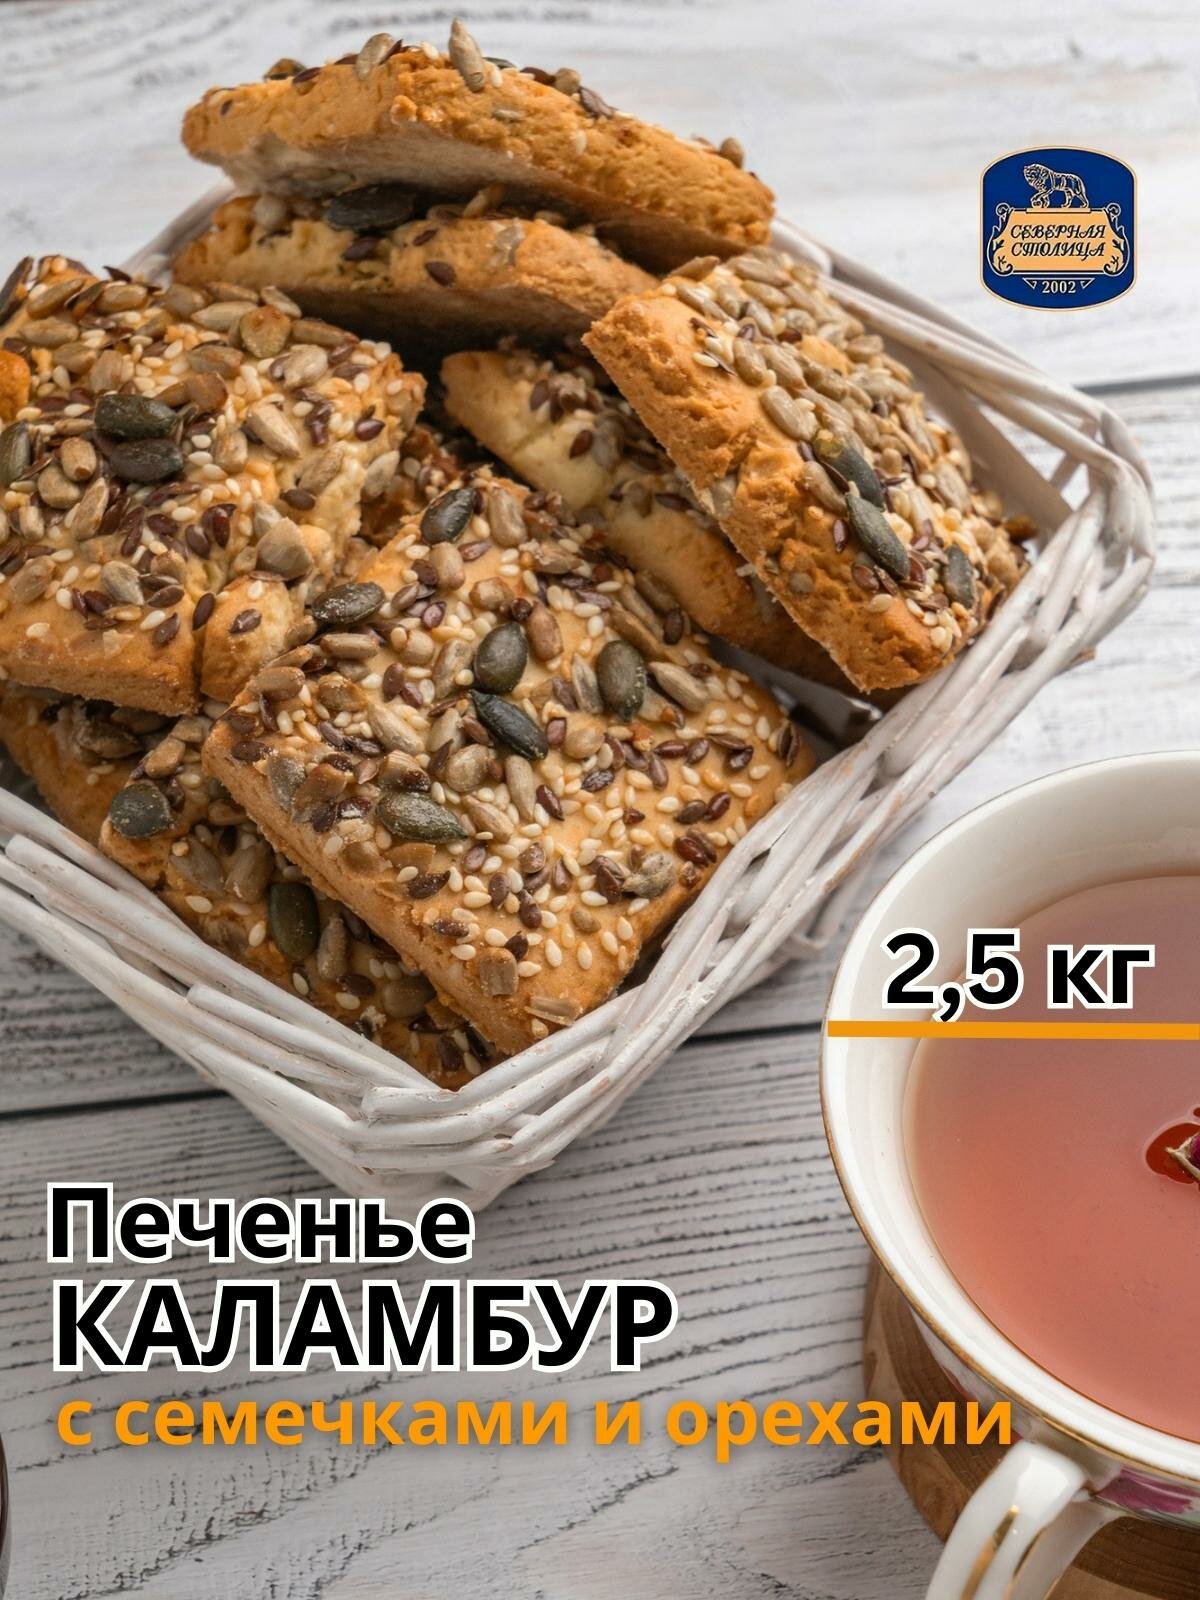 Печенье зерновое каламбур , 2.5 кг Северная столица